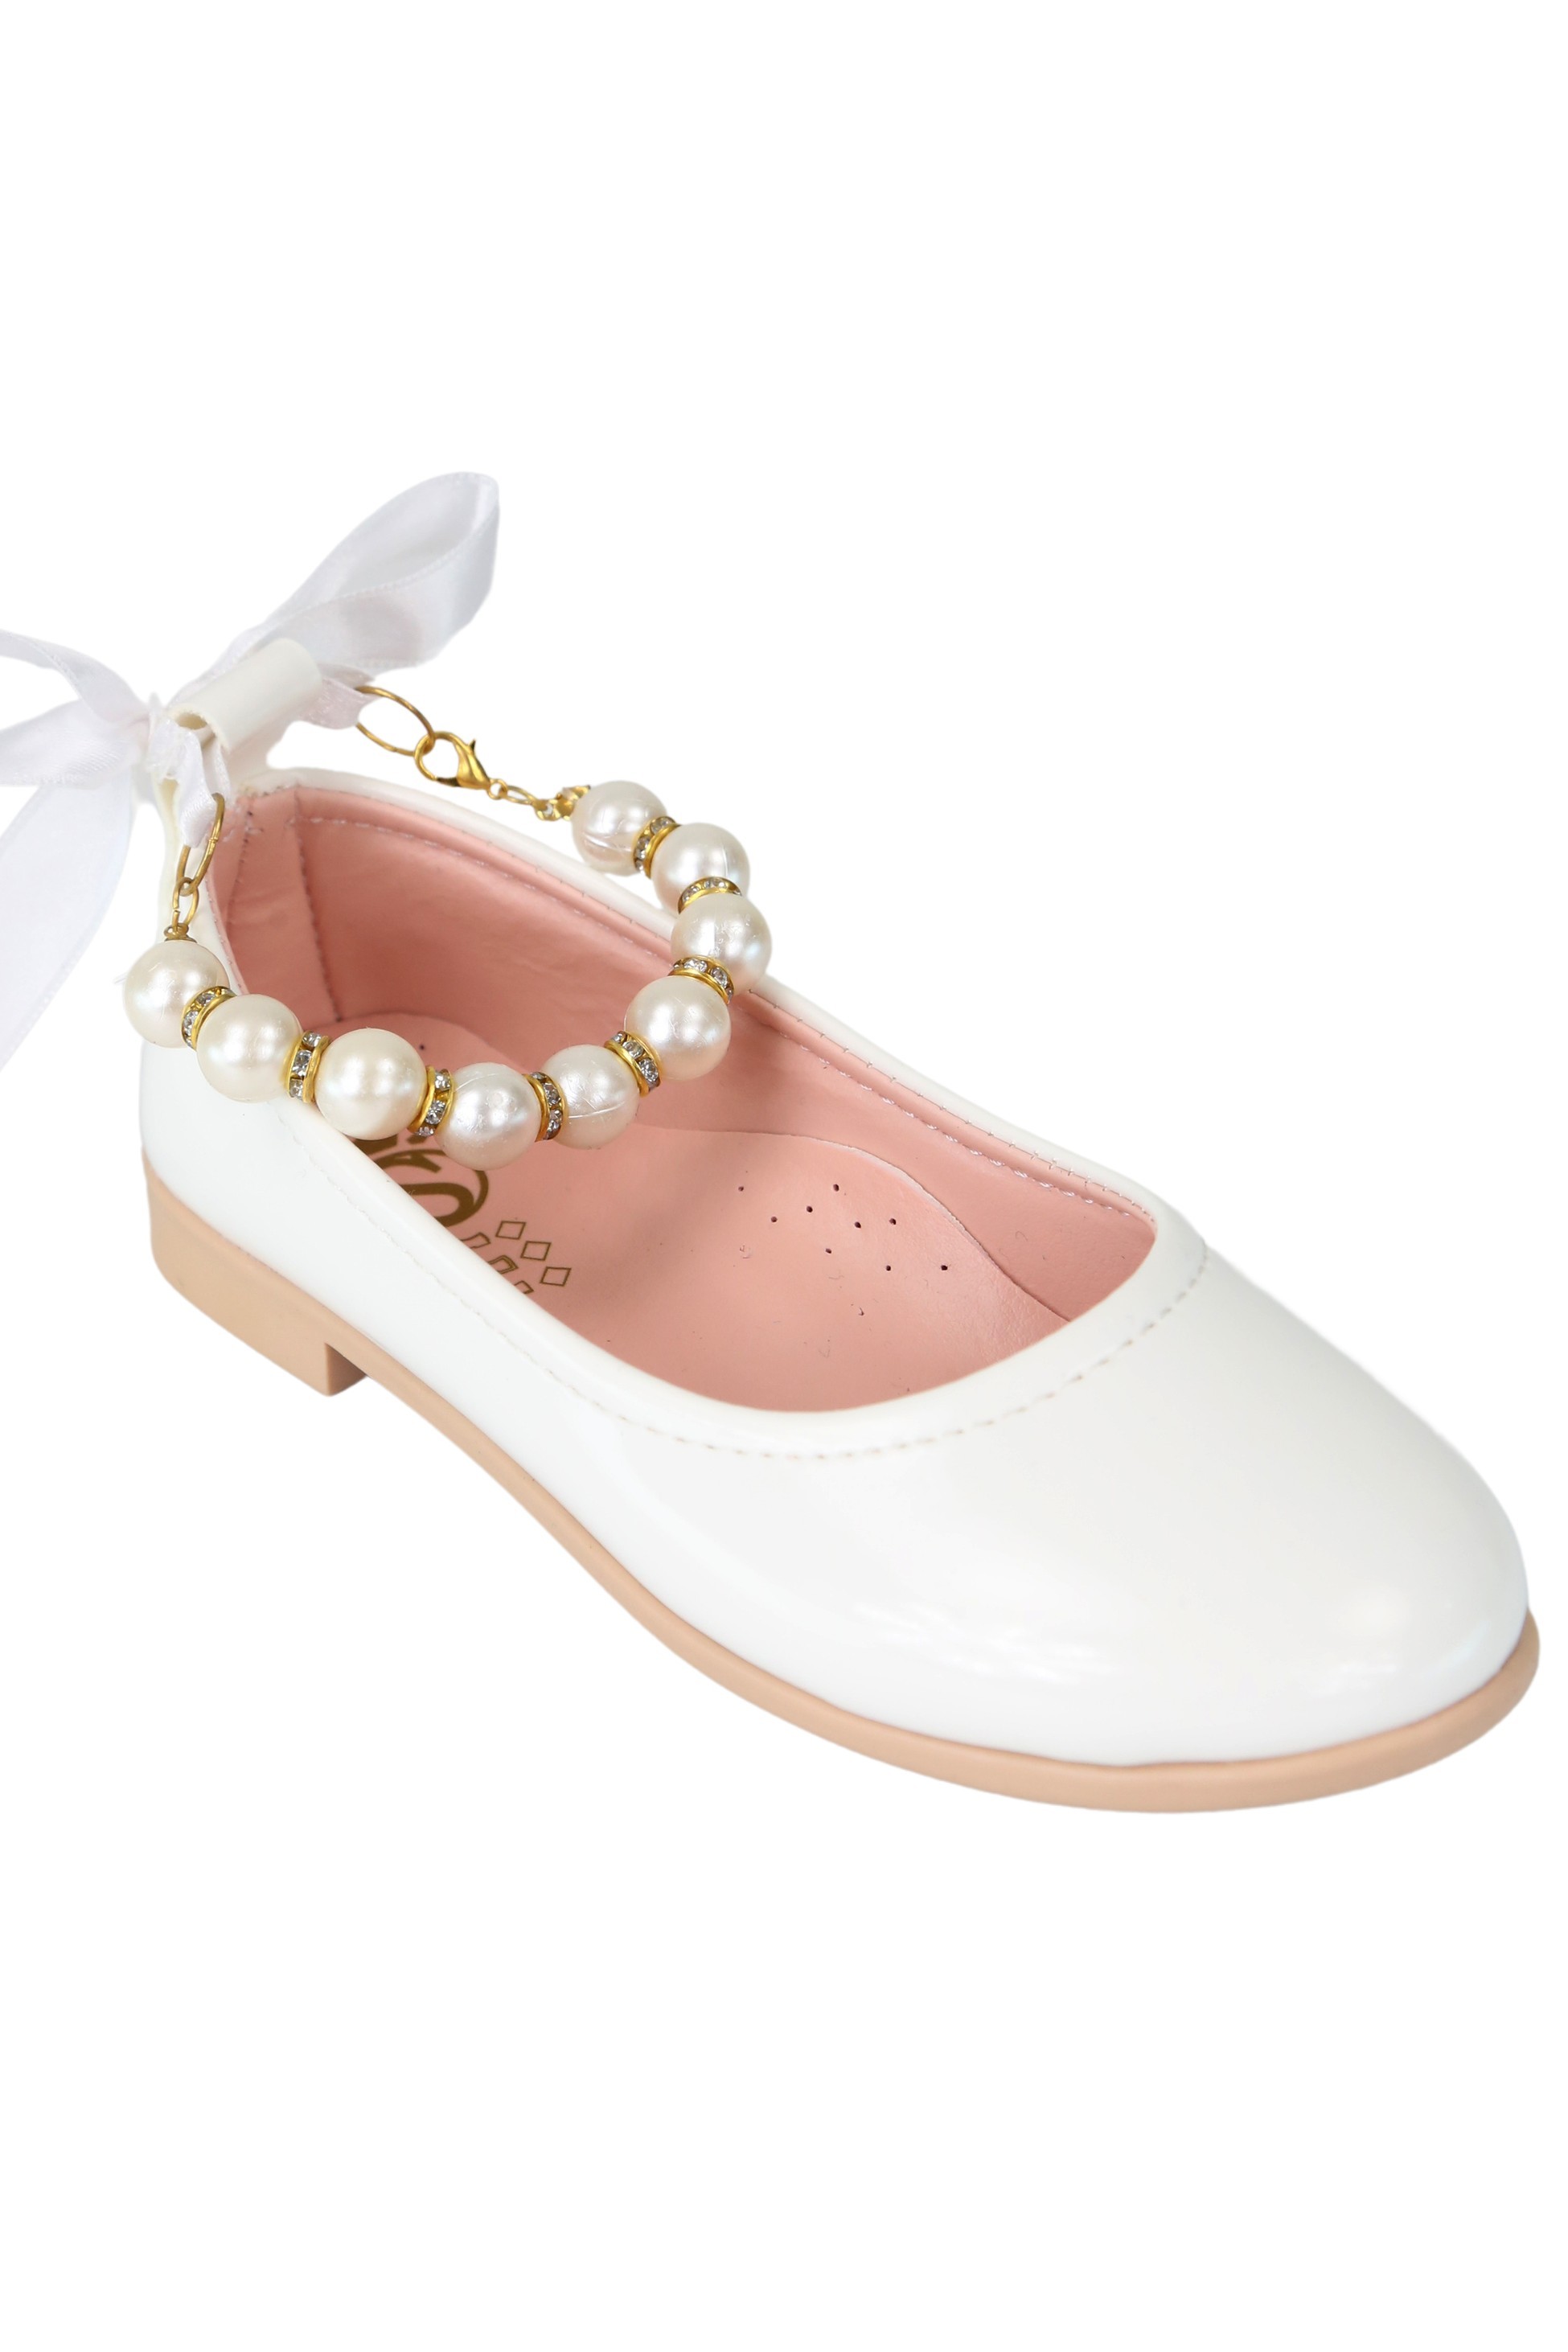 Mädchen Ballerinas mit Perlen & Band zum Hineinschlüpfen - TEAN - Weiß